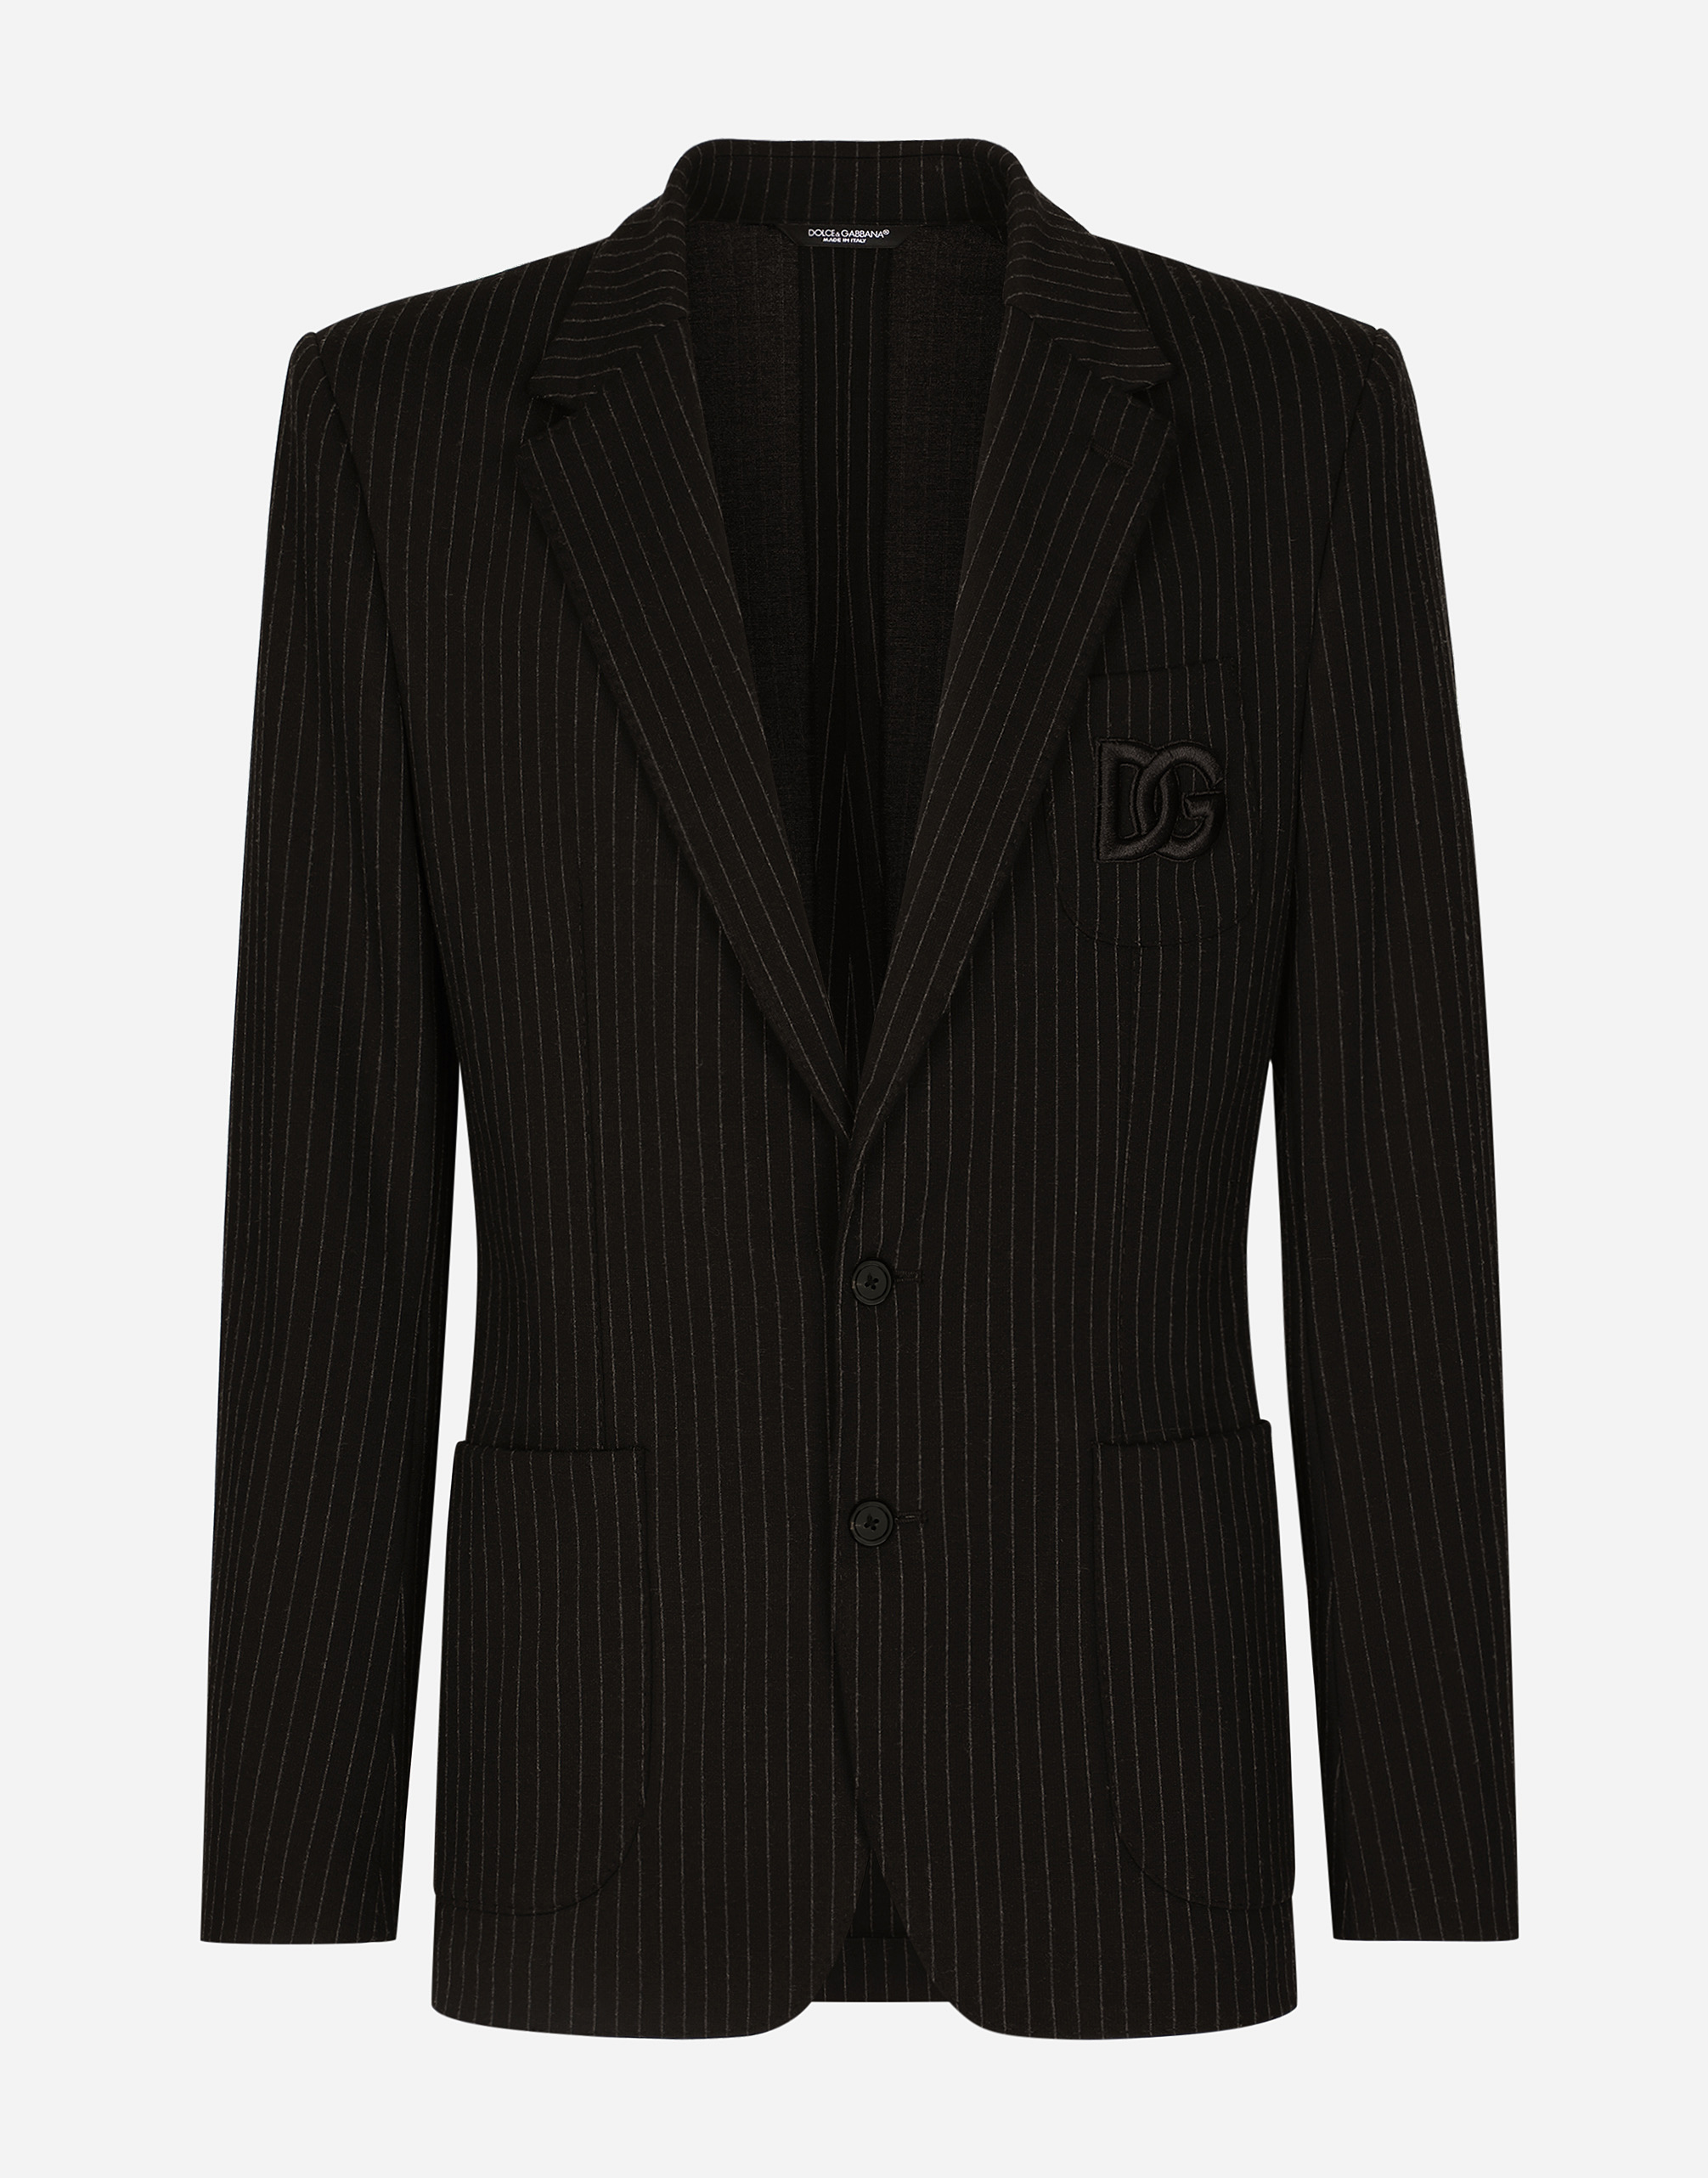 Dolce & Gabbana Pinstripe Stretch Jersey Portofino Jacket In Multicolor